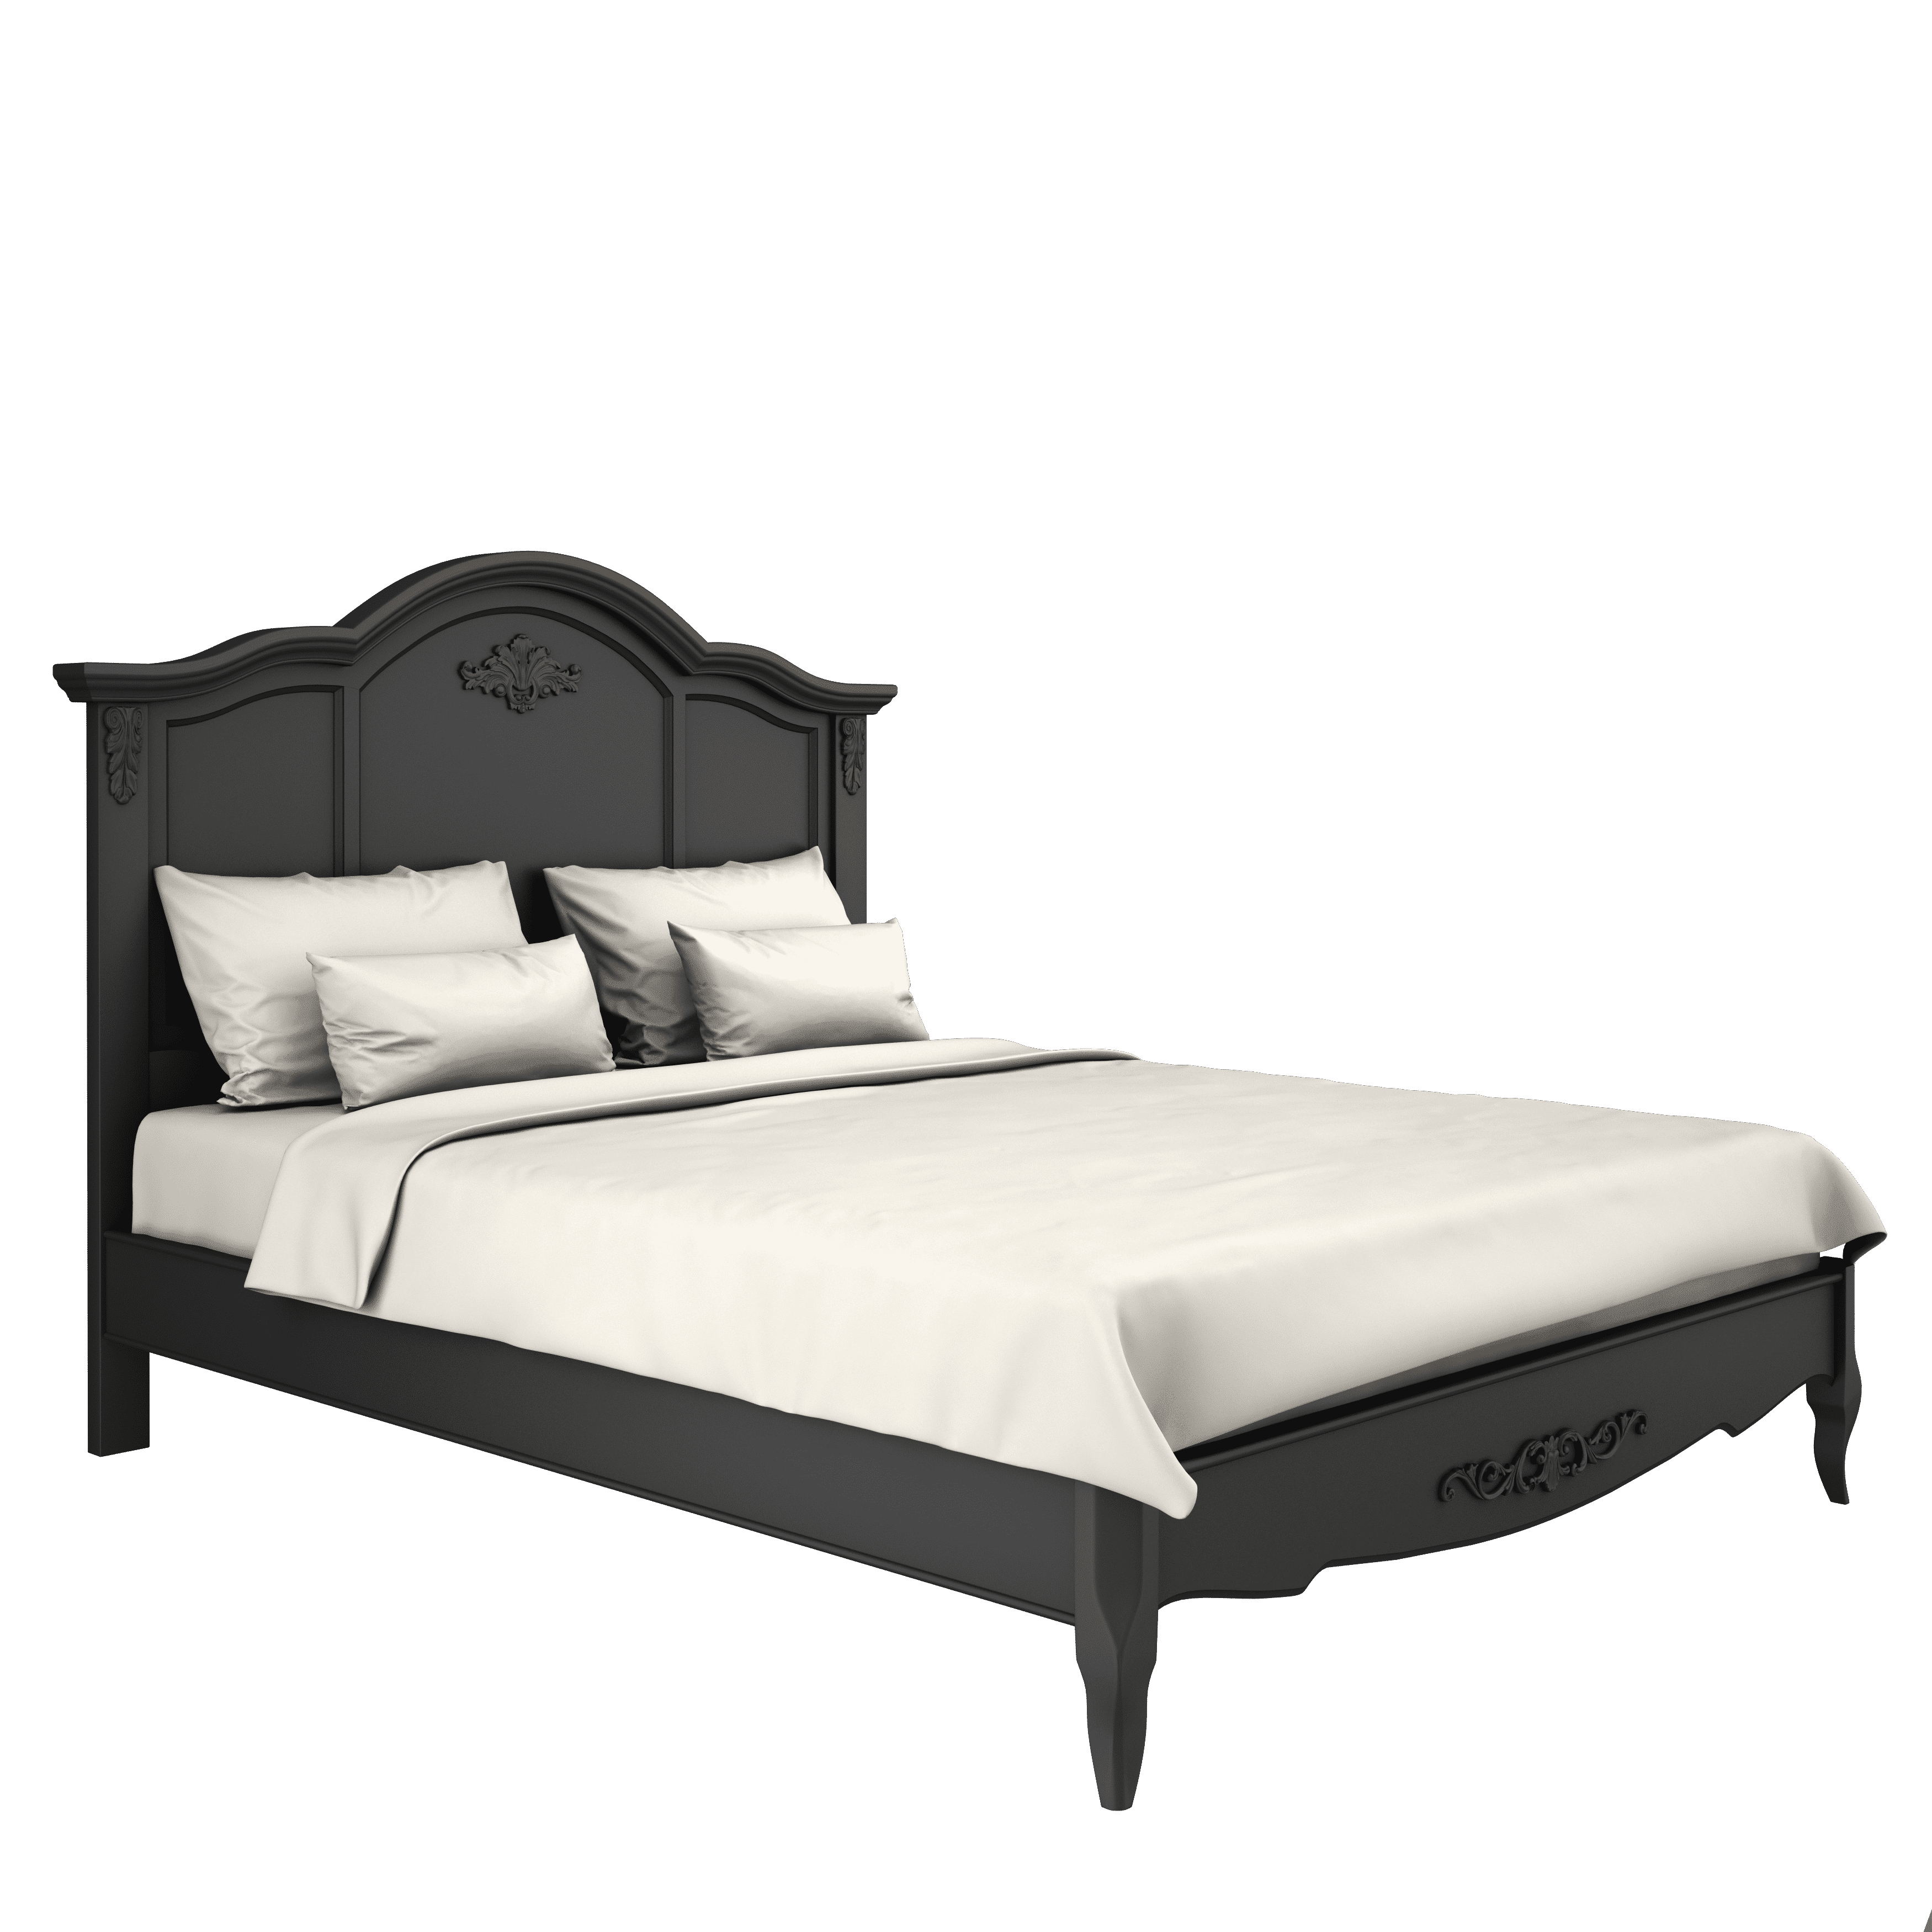 Кровать Aletan Provence, двуспальная, 180x200 см, цвет: черный (B208BL)B208BL